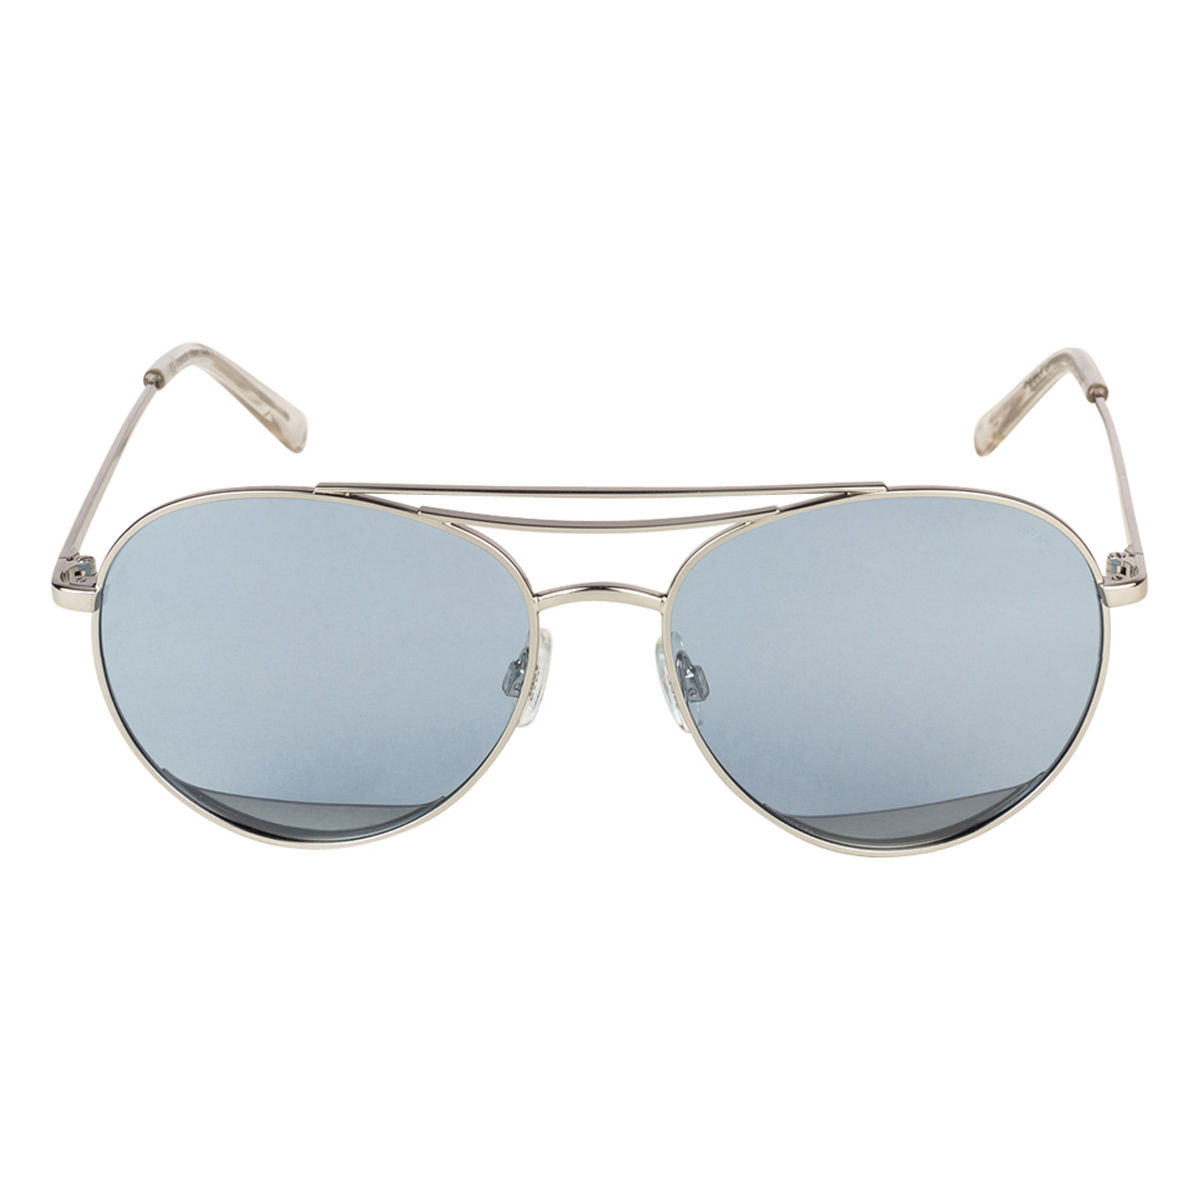 Invu Sunglasses Aviator With Blue Lens For Men